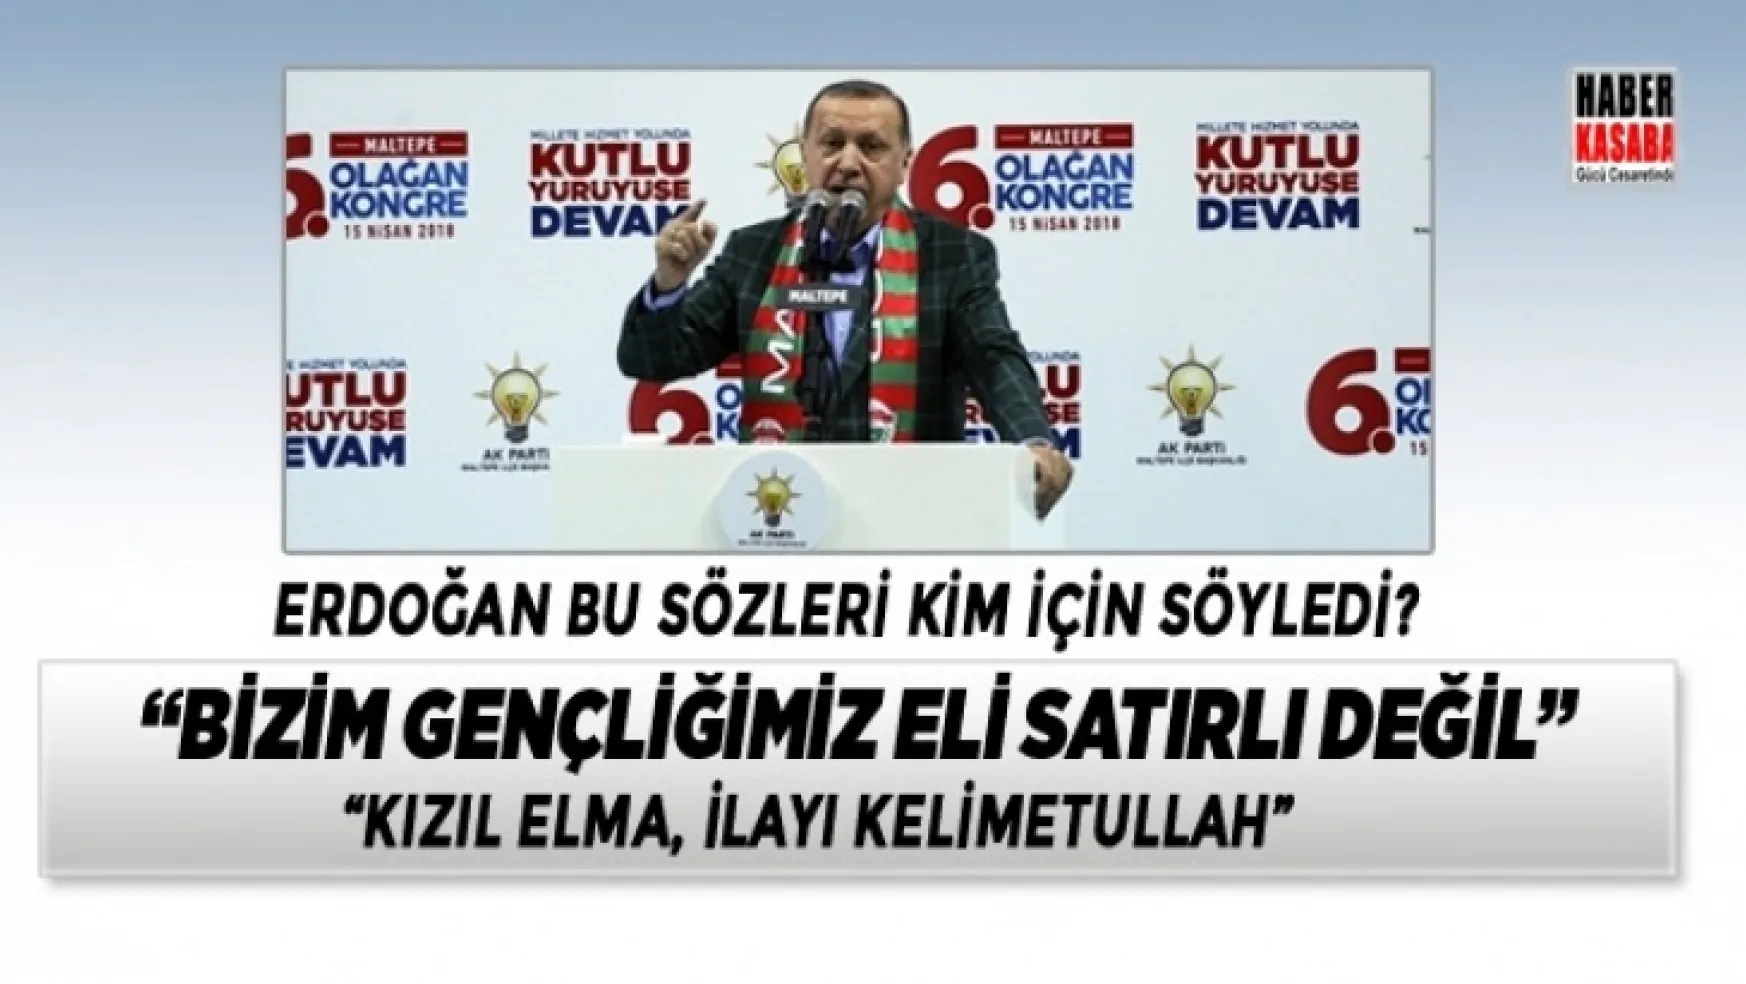 Erdoğan 'Bizim gençliğimiz eli satırlı değil'